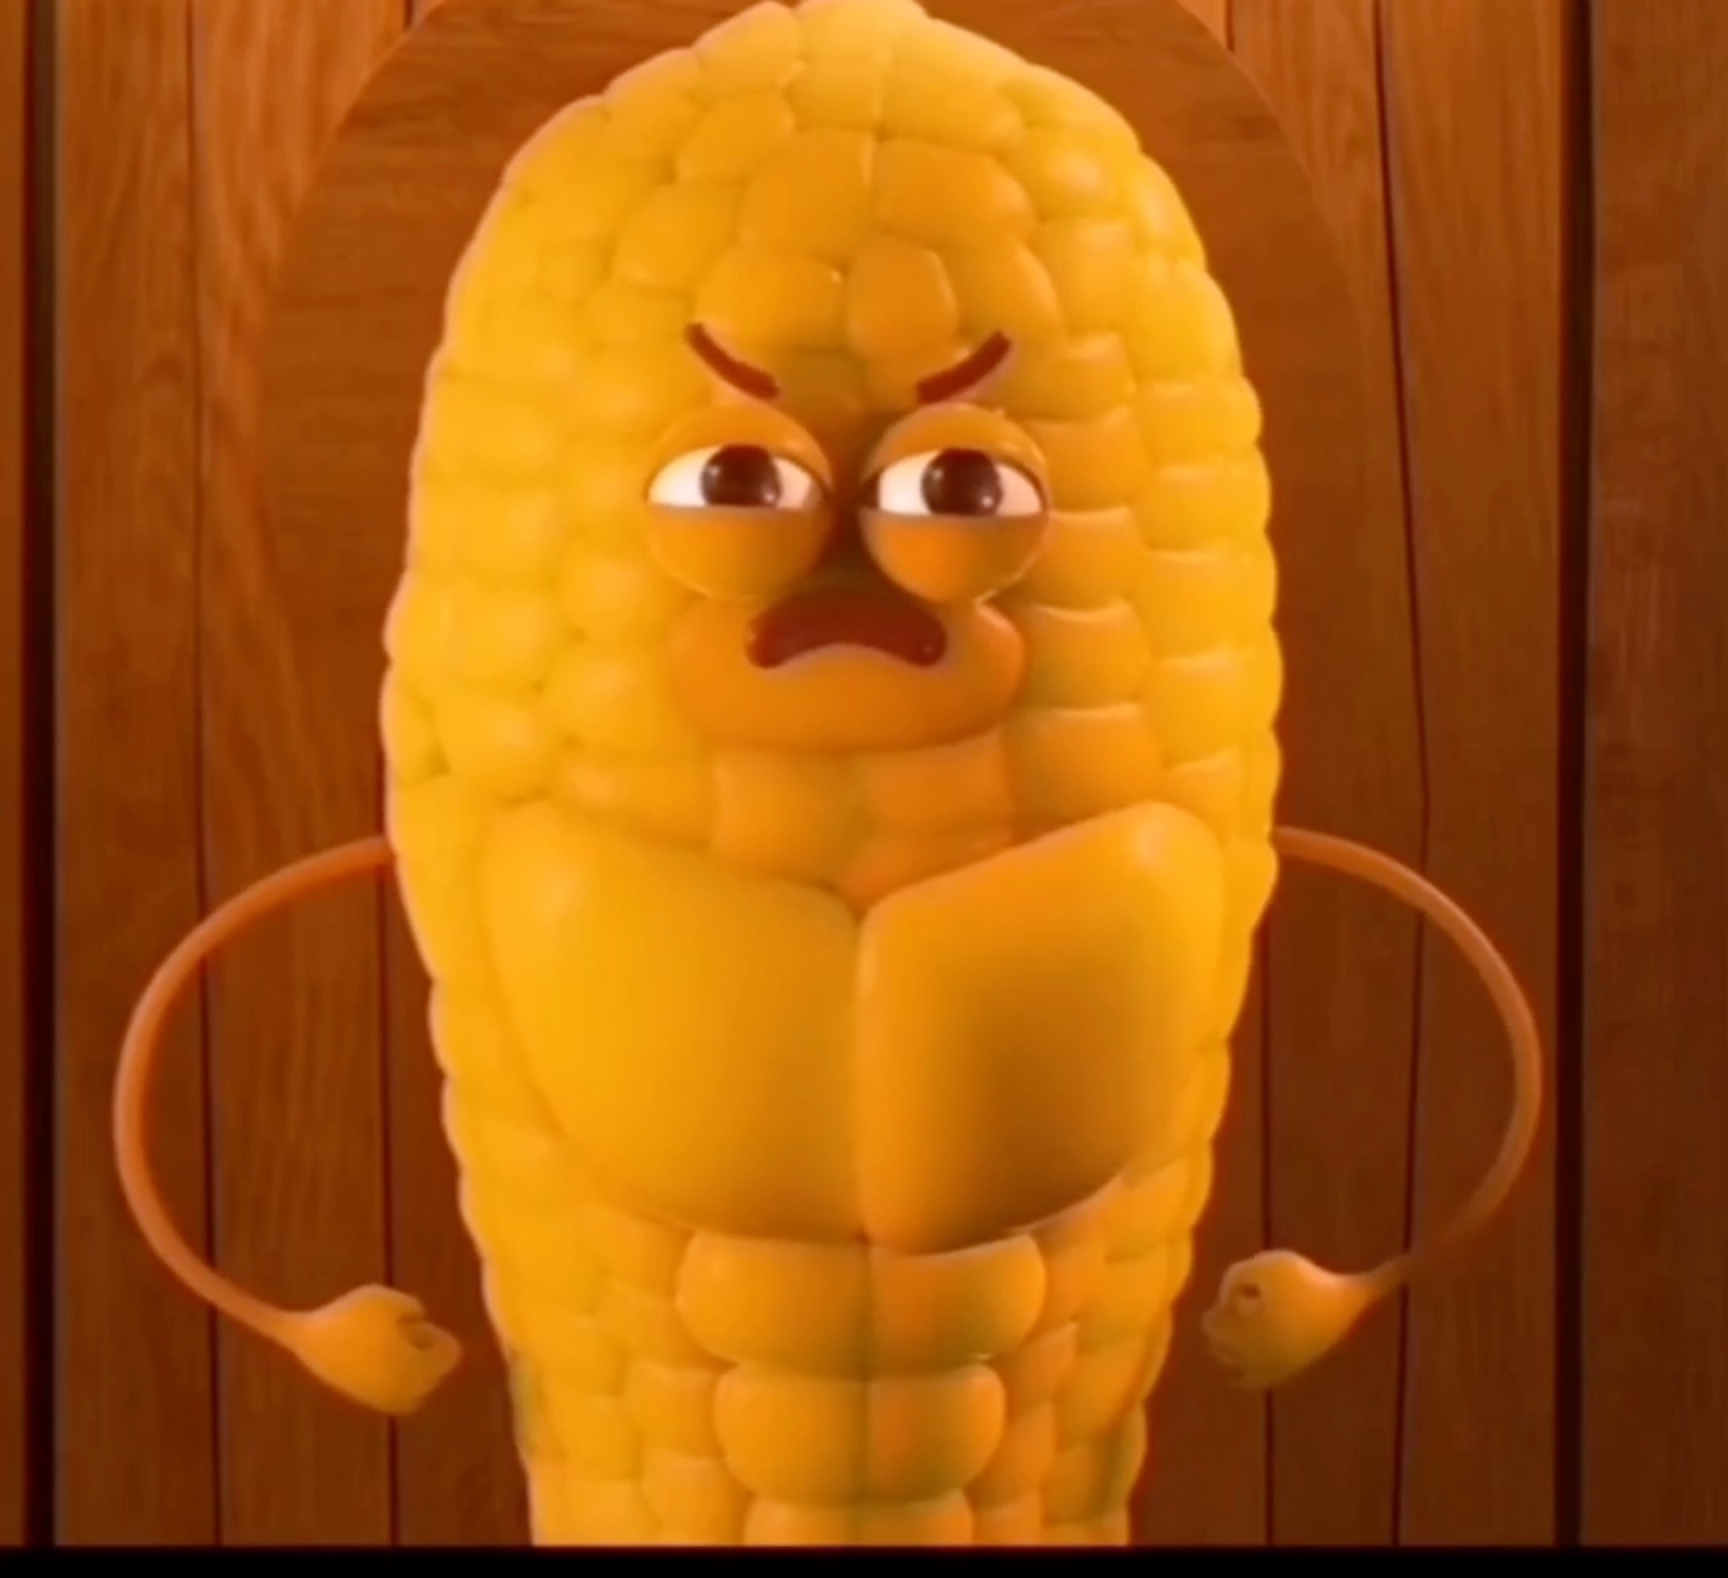 玉米腹肌搞笑图图片